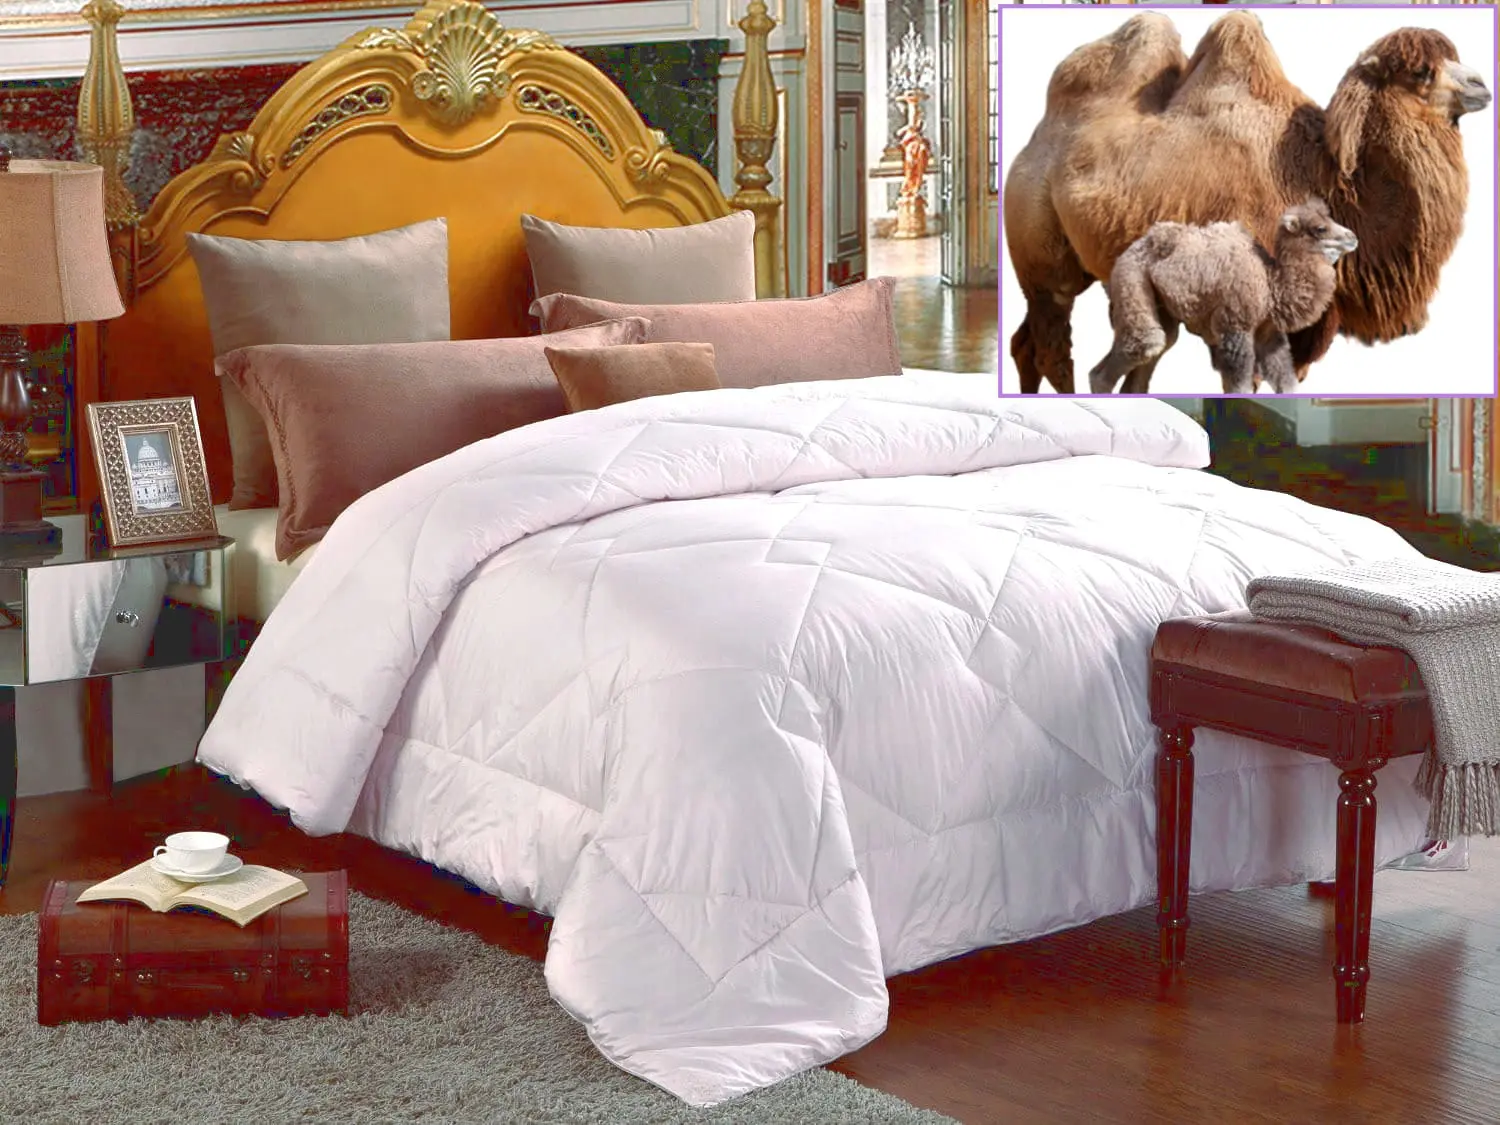 https://organic-comfort.com/wp-content/uploads/camel-pure-wool-comforter-queen.jpg.webp